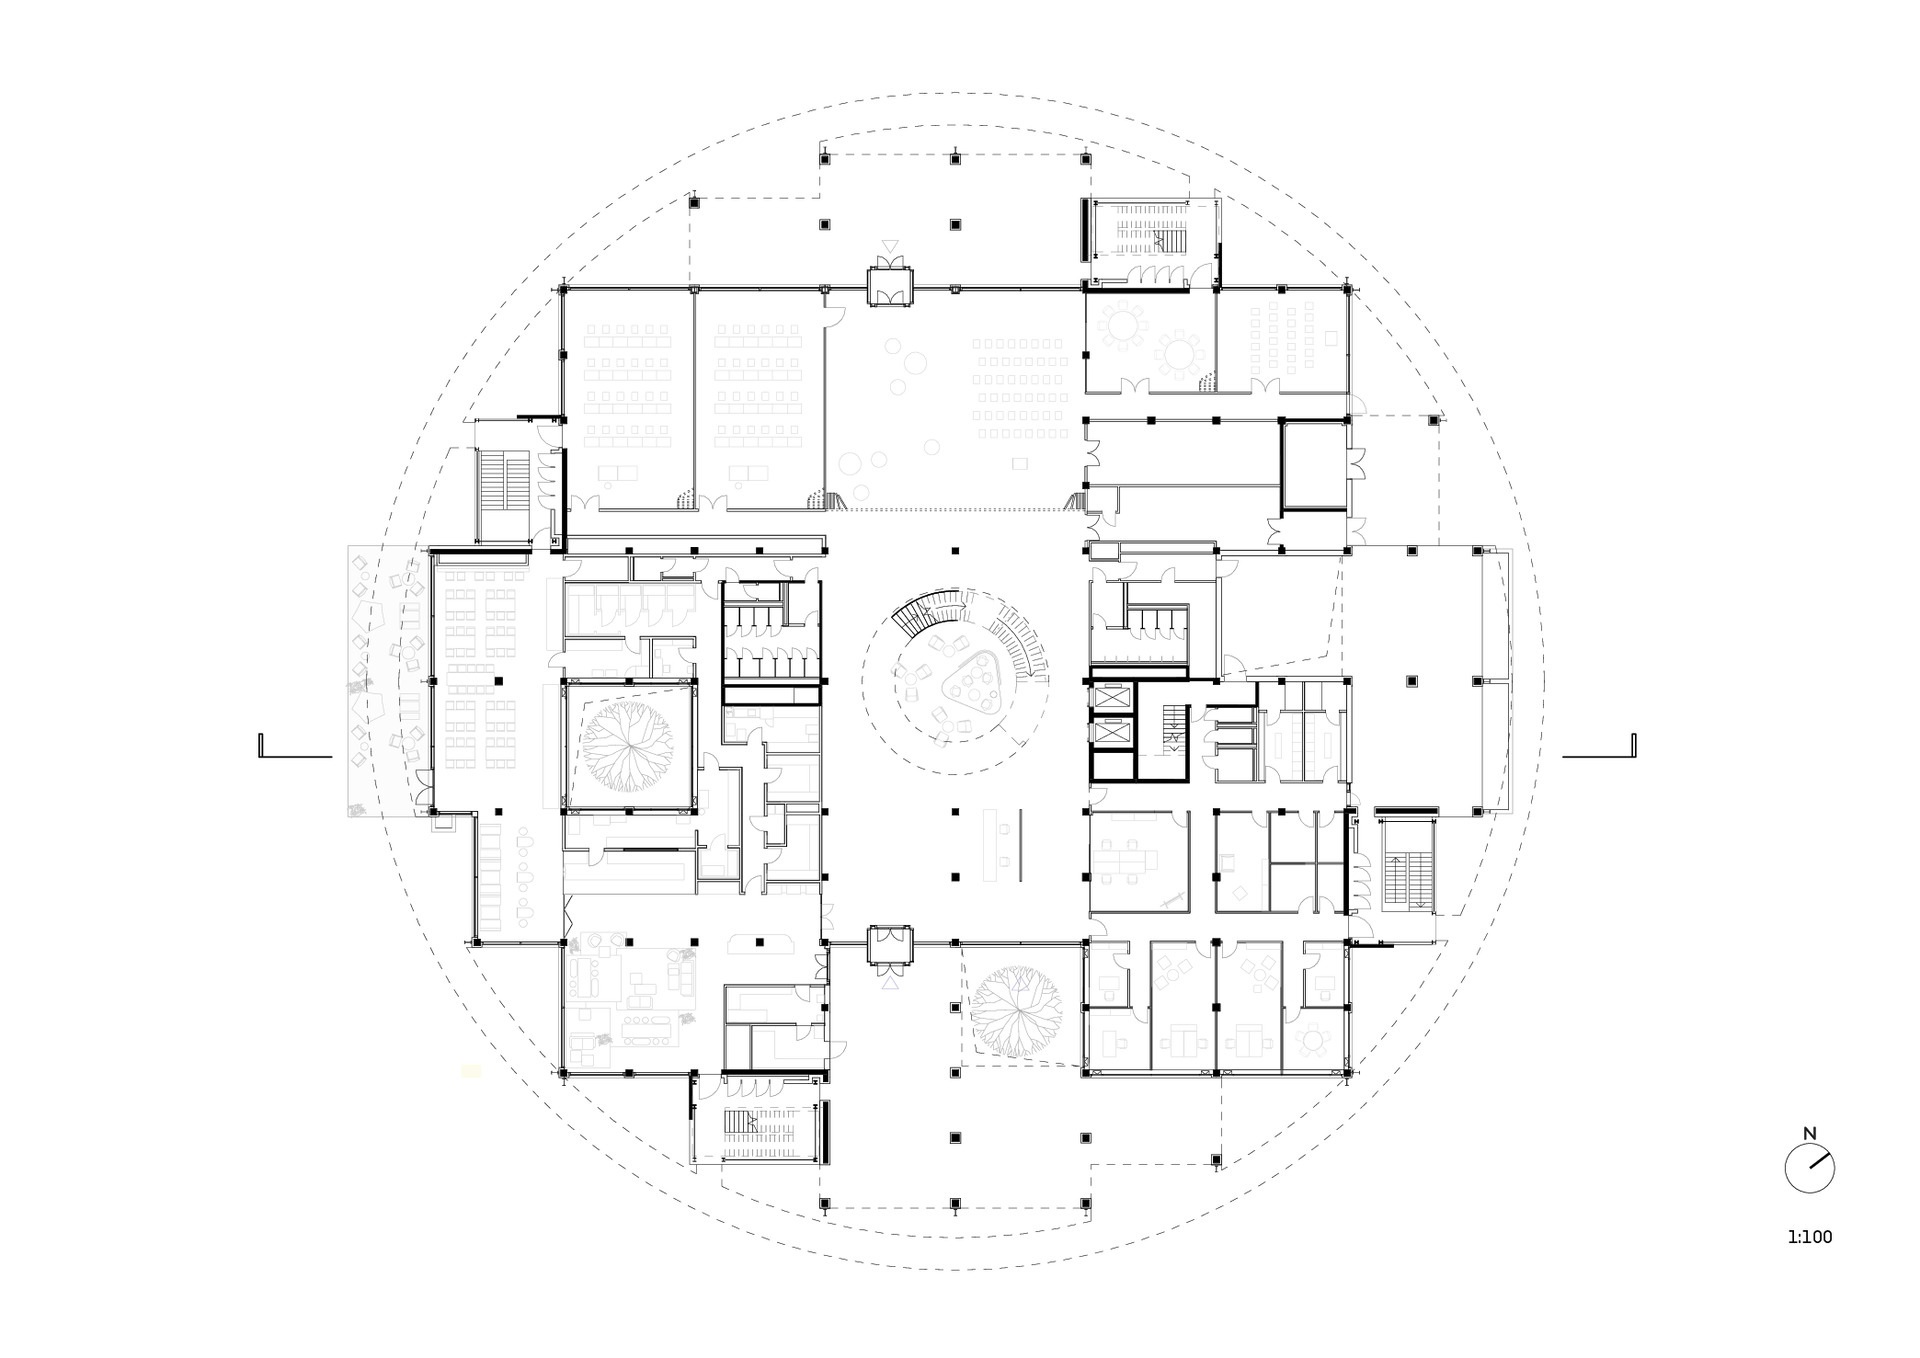 Floor Plan - Ground Floor